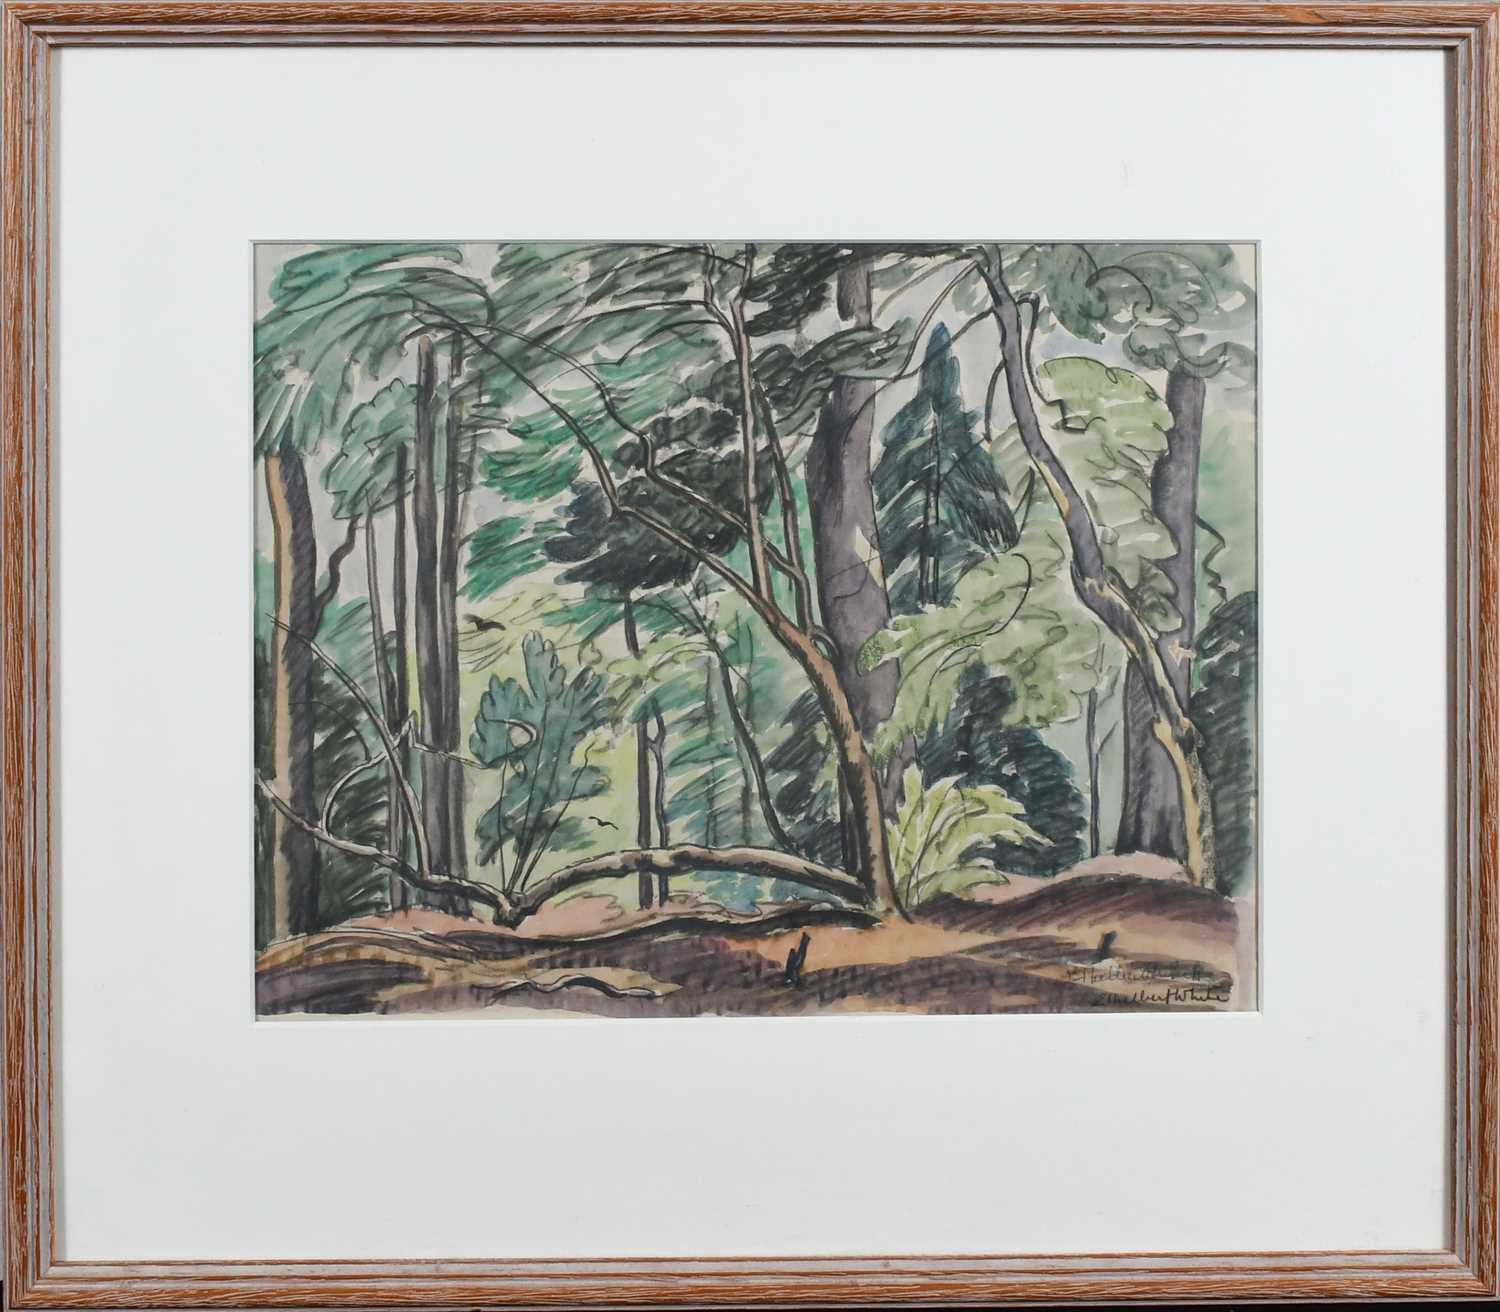 Φ Ethelbert White NEAC, RWS (1891-1972) Wooded landscape Signed twice Ethelbert White (lower - Image 2 of 4